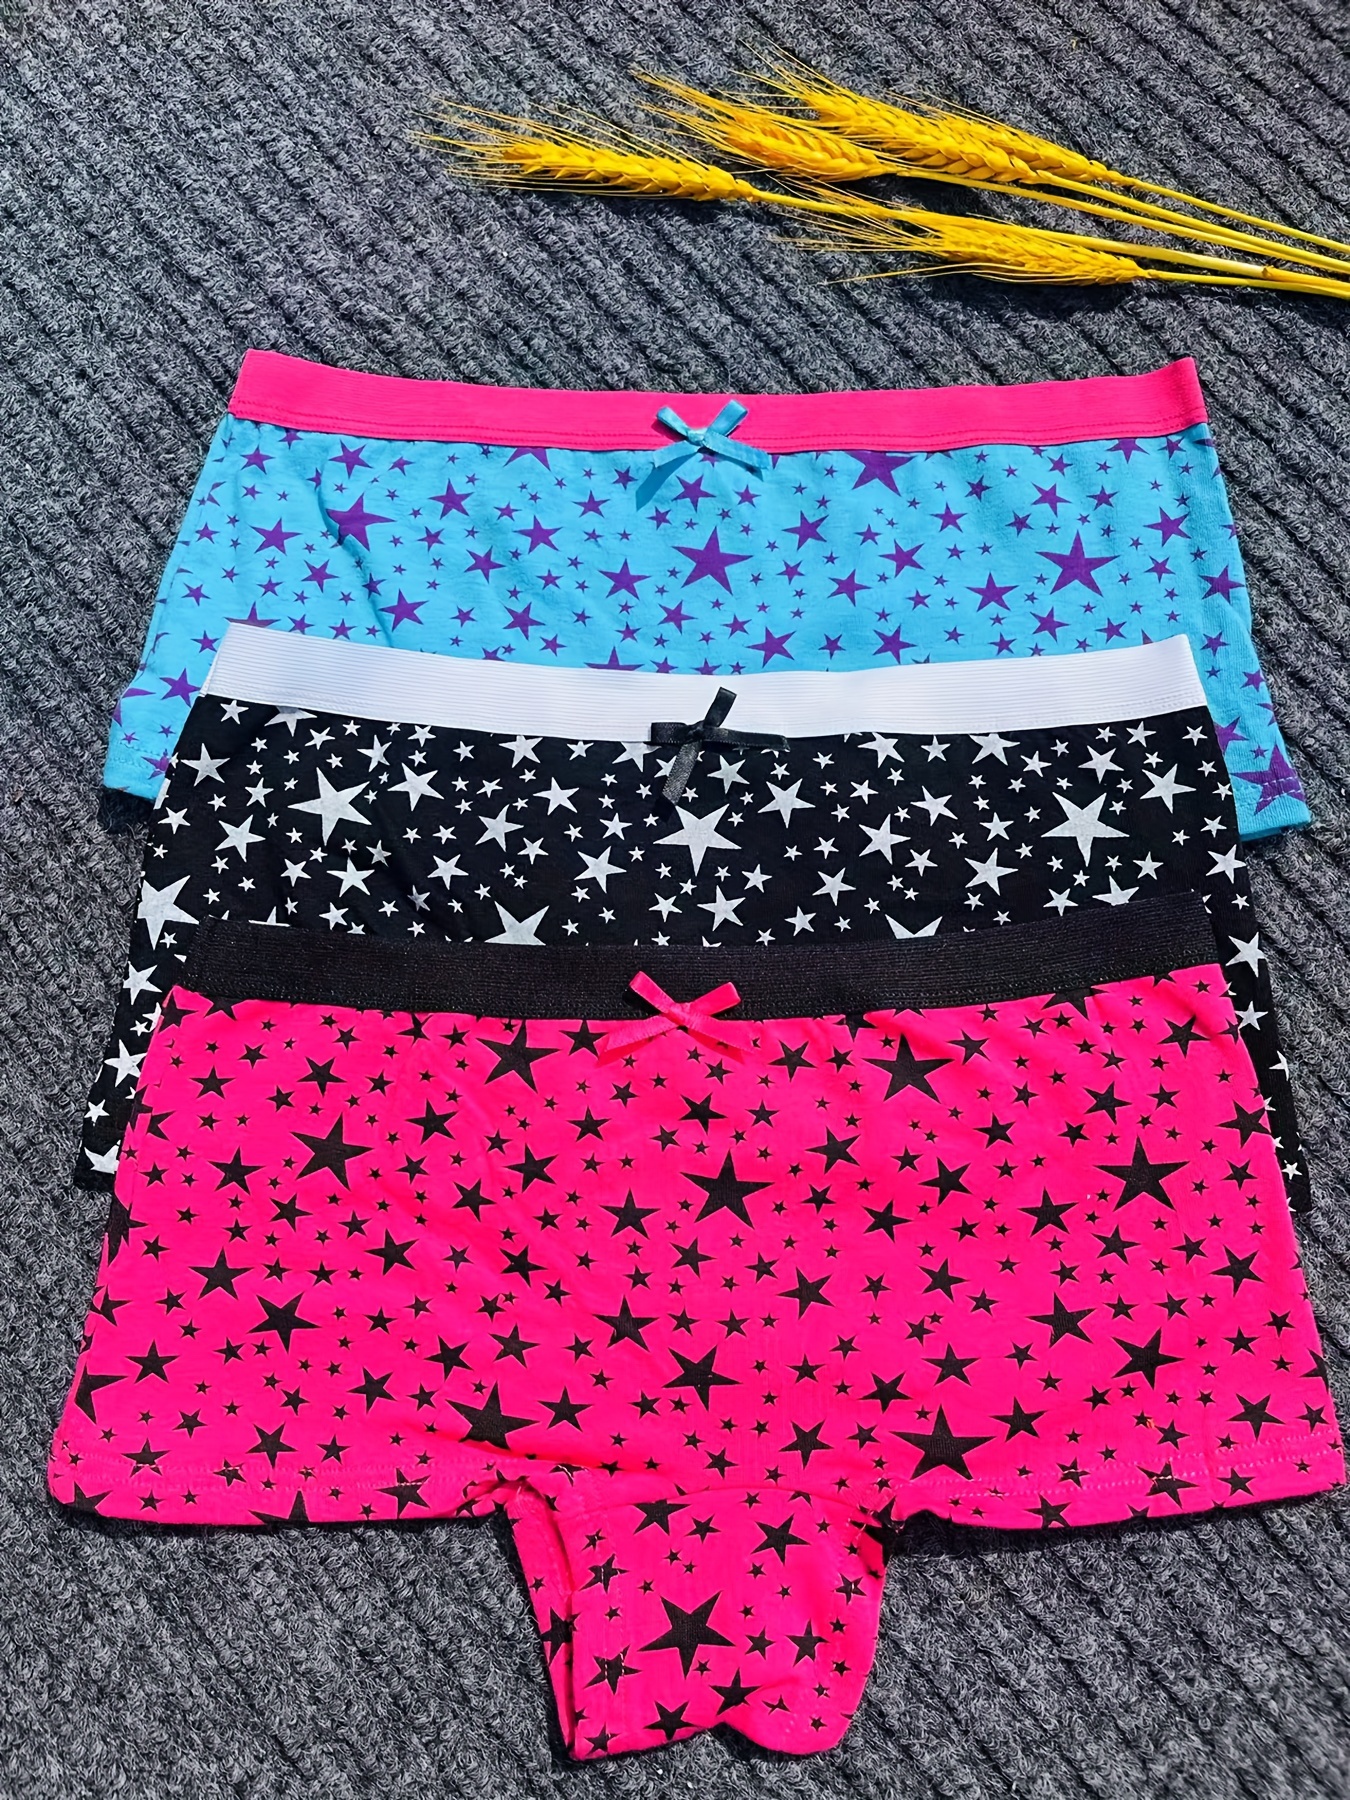 3pcs/lot Girls Cotton Underwear Kids Large Size Boxer Briefs